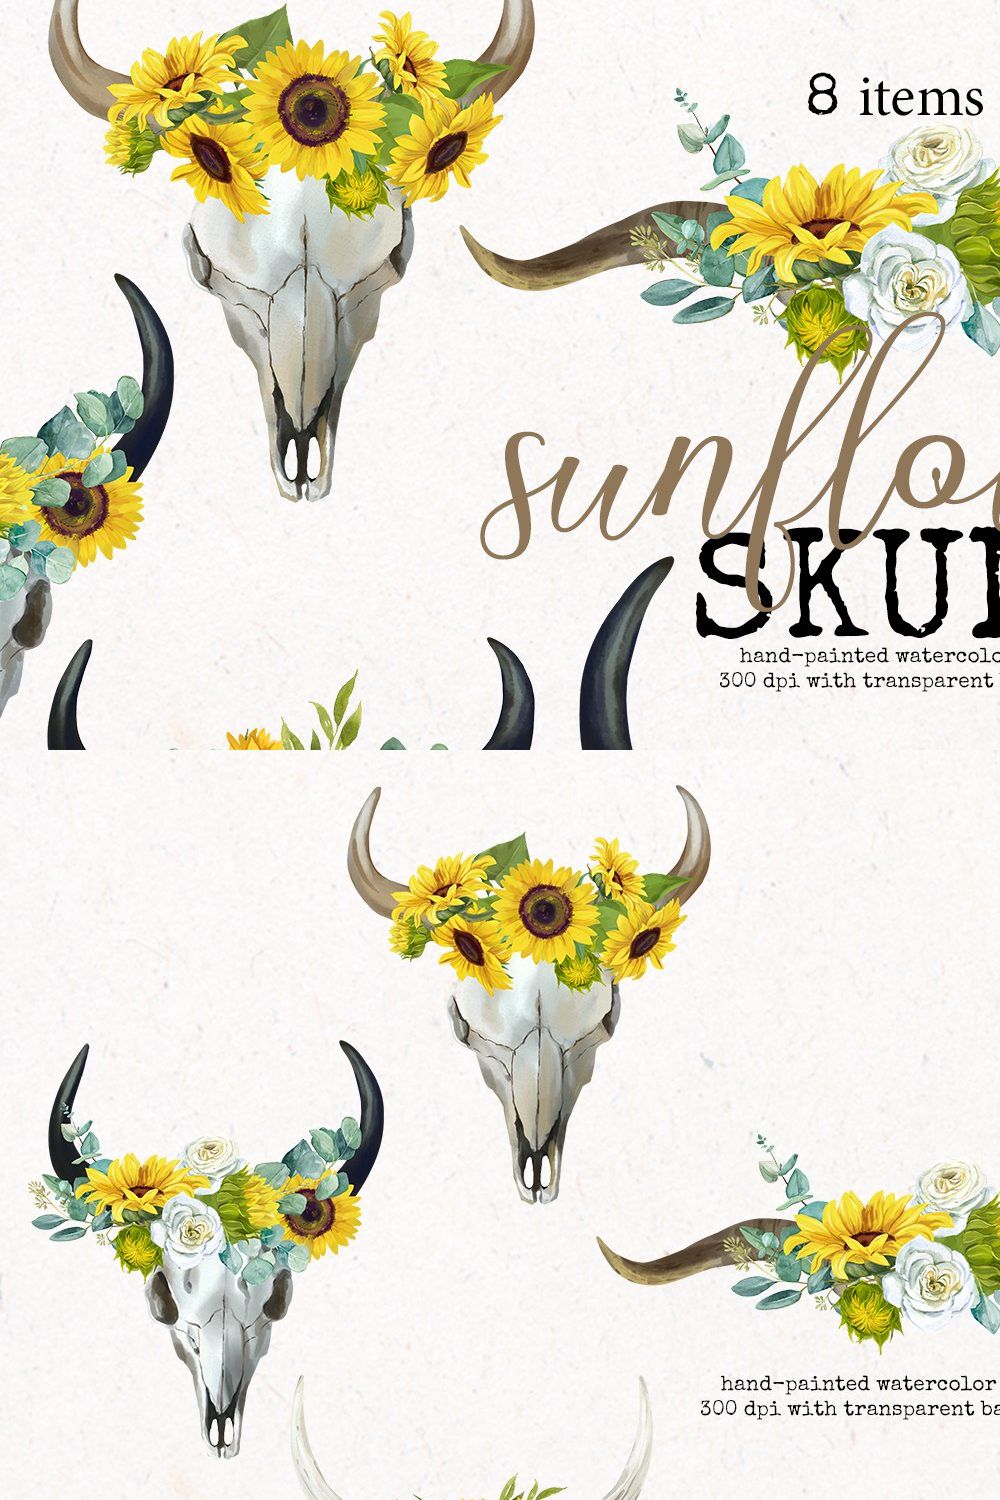 Boho Bull Skull with Sunflowers pinterest preview image.